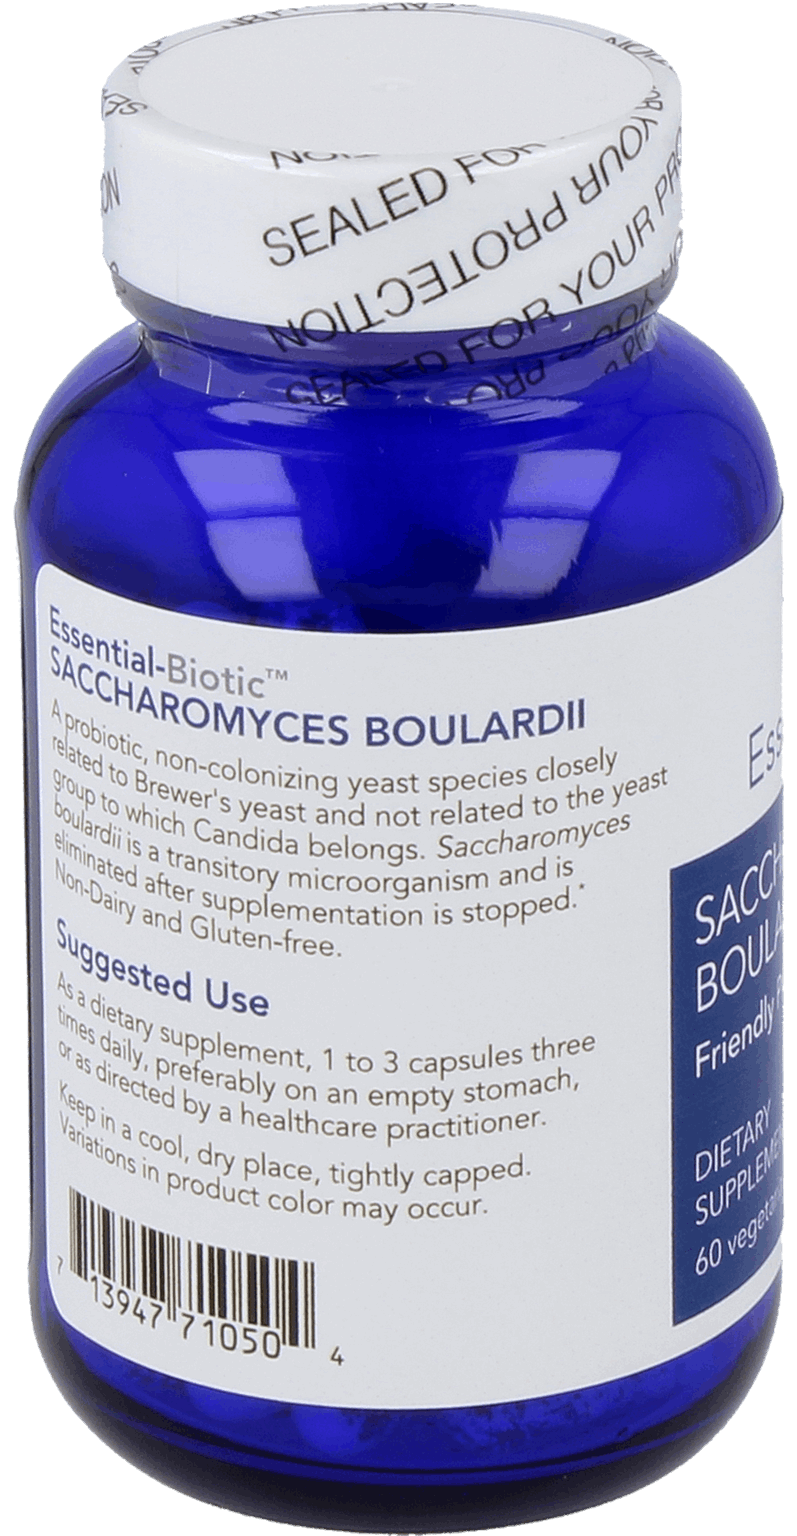 Essential-Biotic® Saccharomyces boulardii 